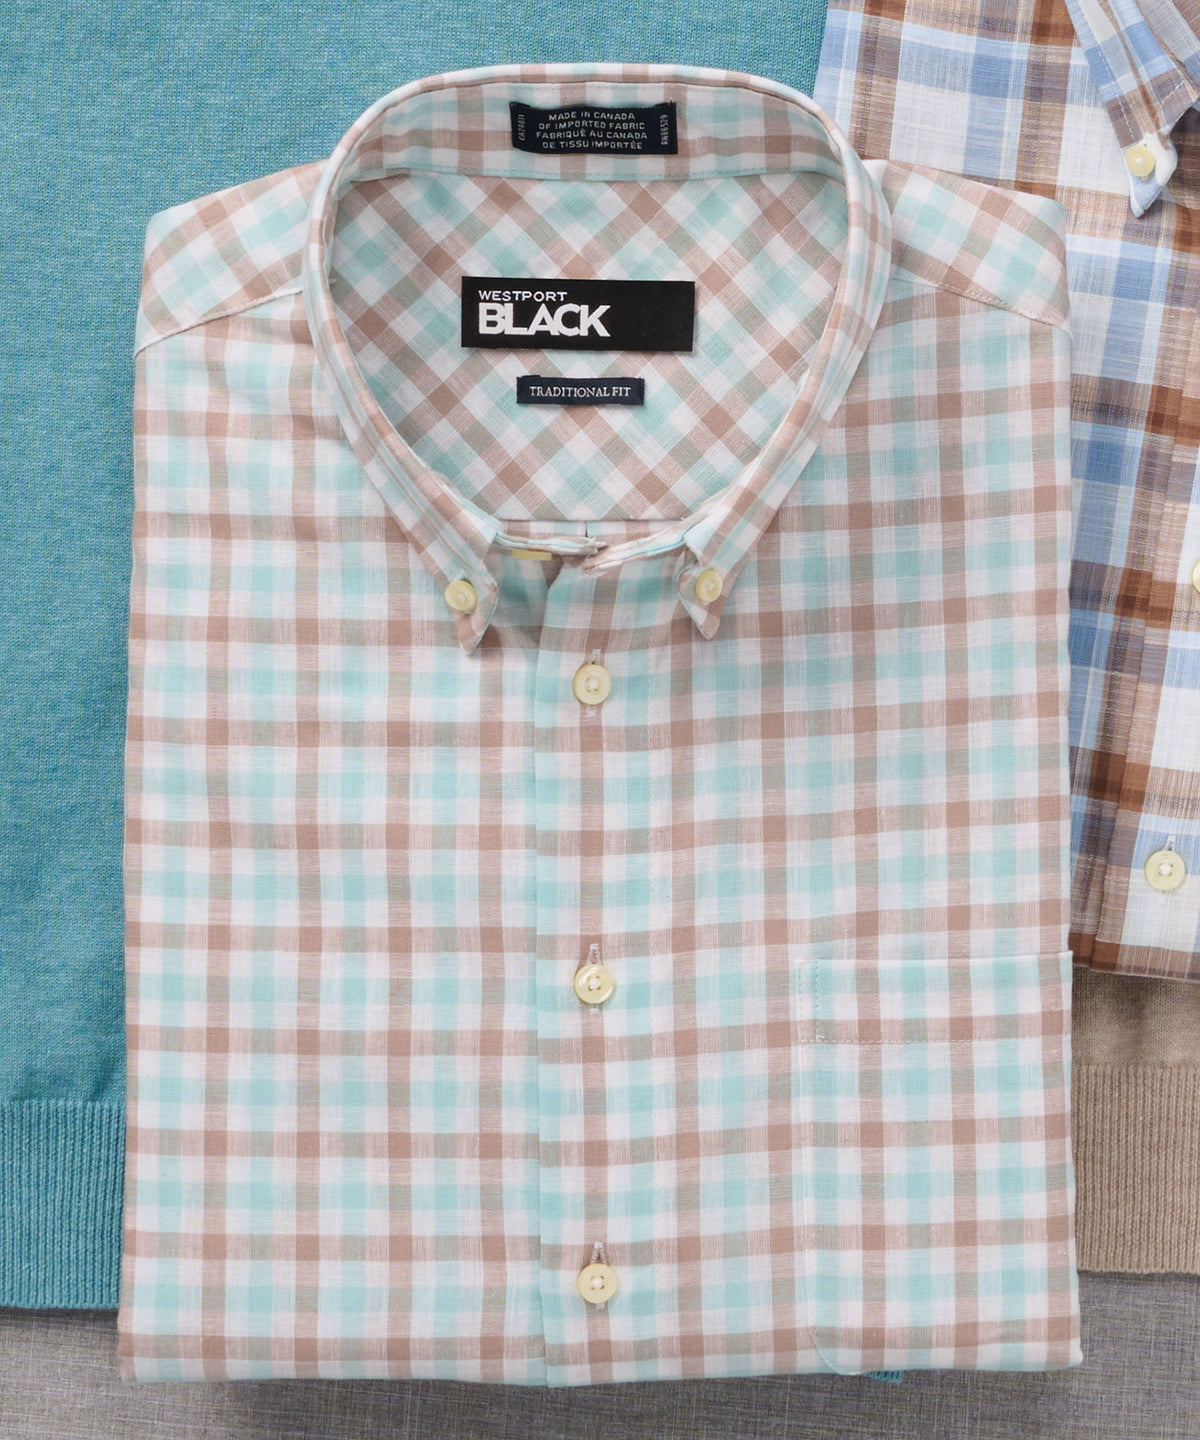 Westport Black Plaid & Check Long Sleeve Cotton-Linen Sport Shirt, Big & Tall